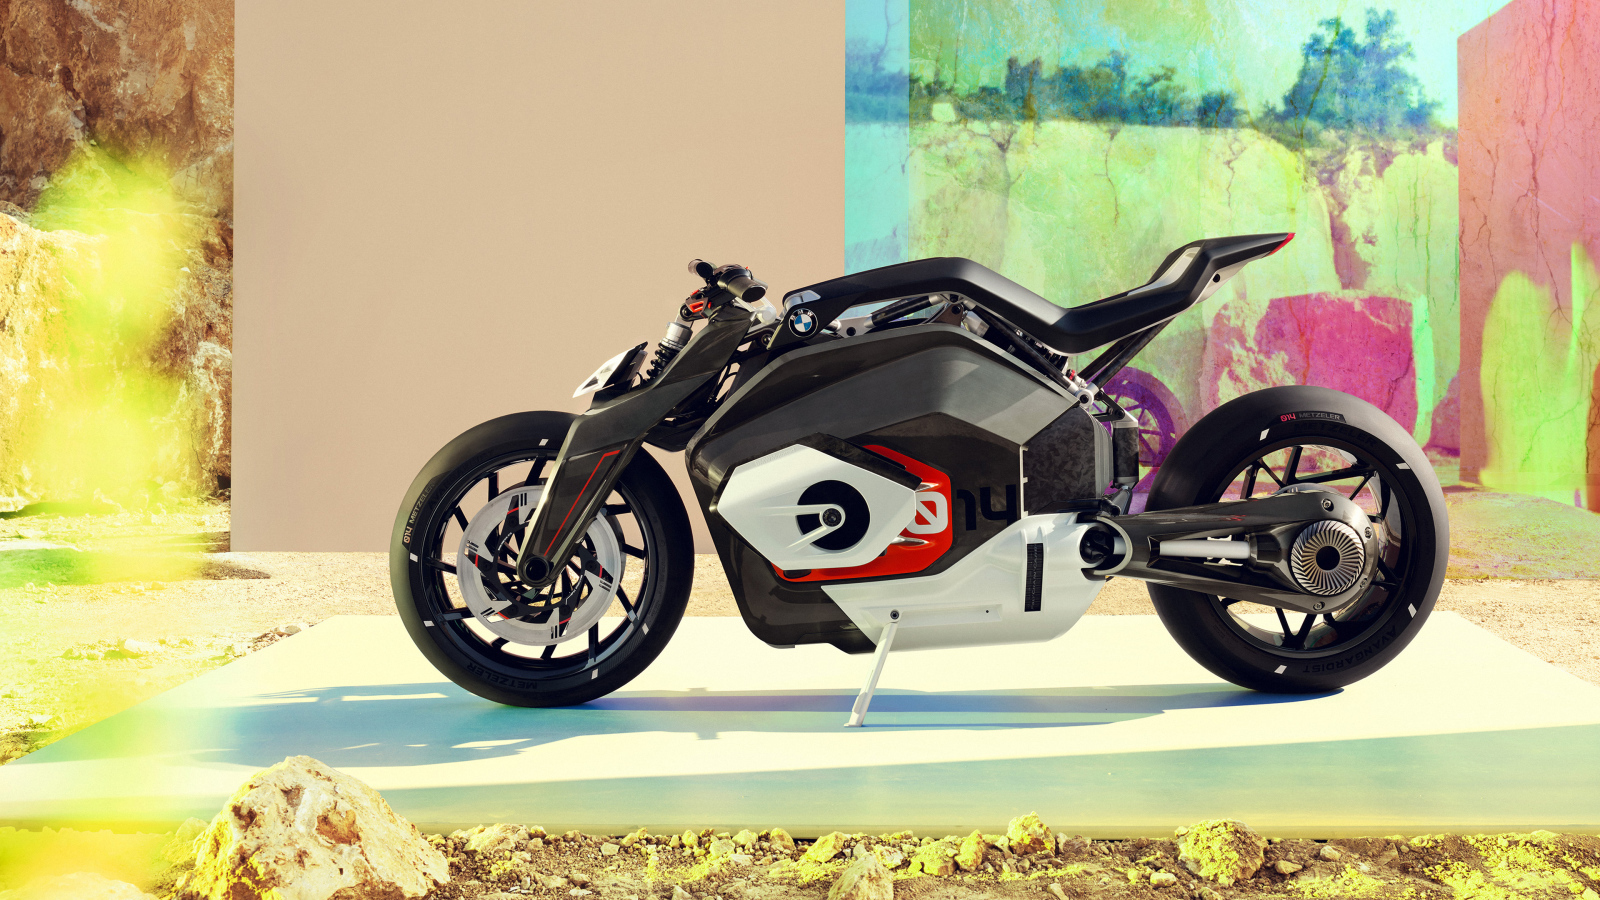 Большой мотоцикл BMW Motorrad Vision DC Roadster 2019 года у стены